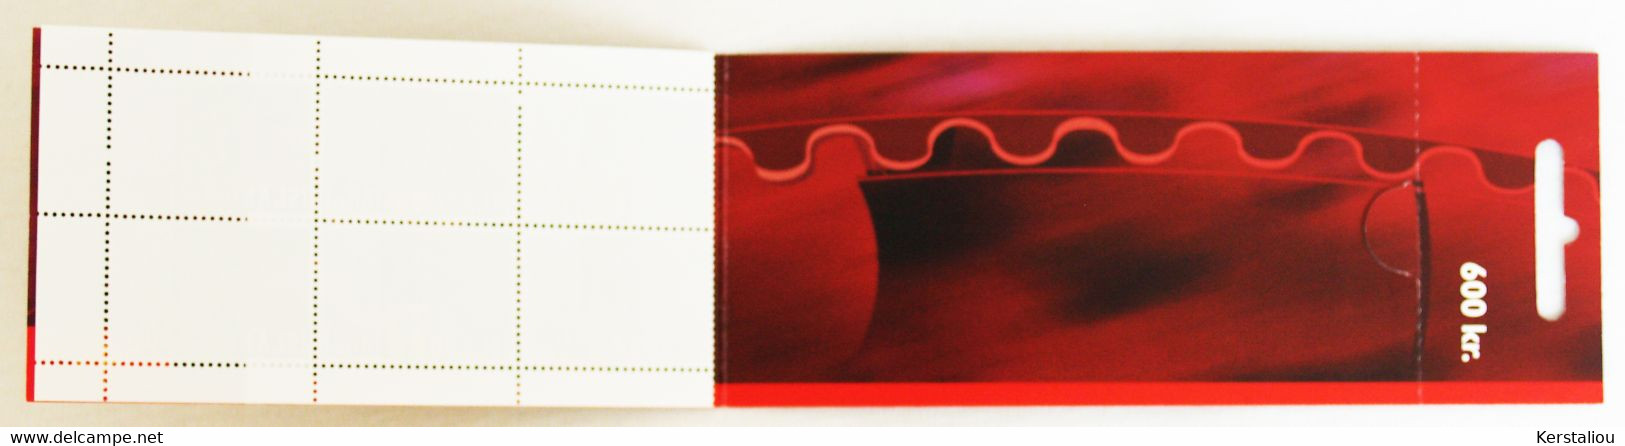 EUROPA 2002 – 2 CARNETS DE 10 TIMBRES – N° 4 Et 5 – POSTE ISLANDAISE - Booklets